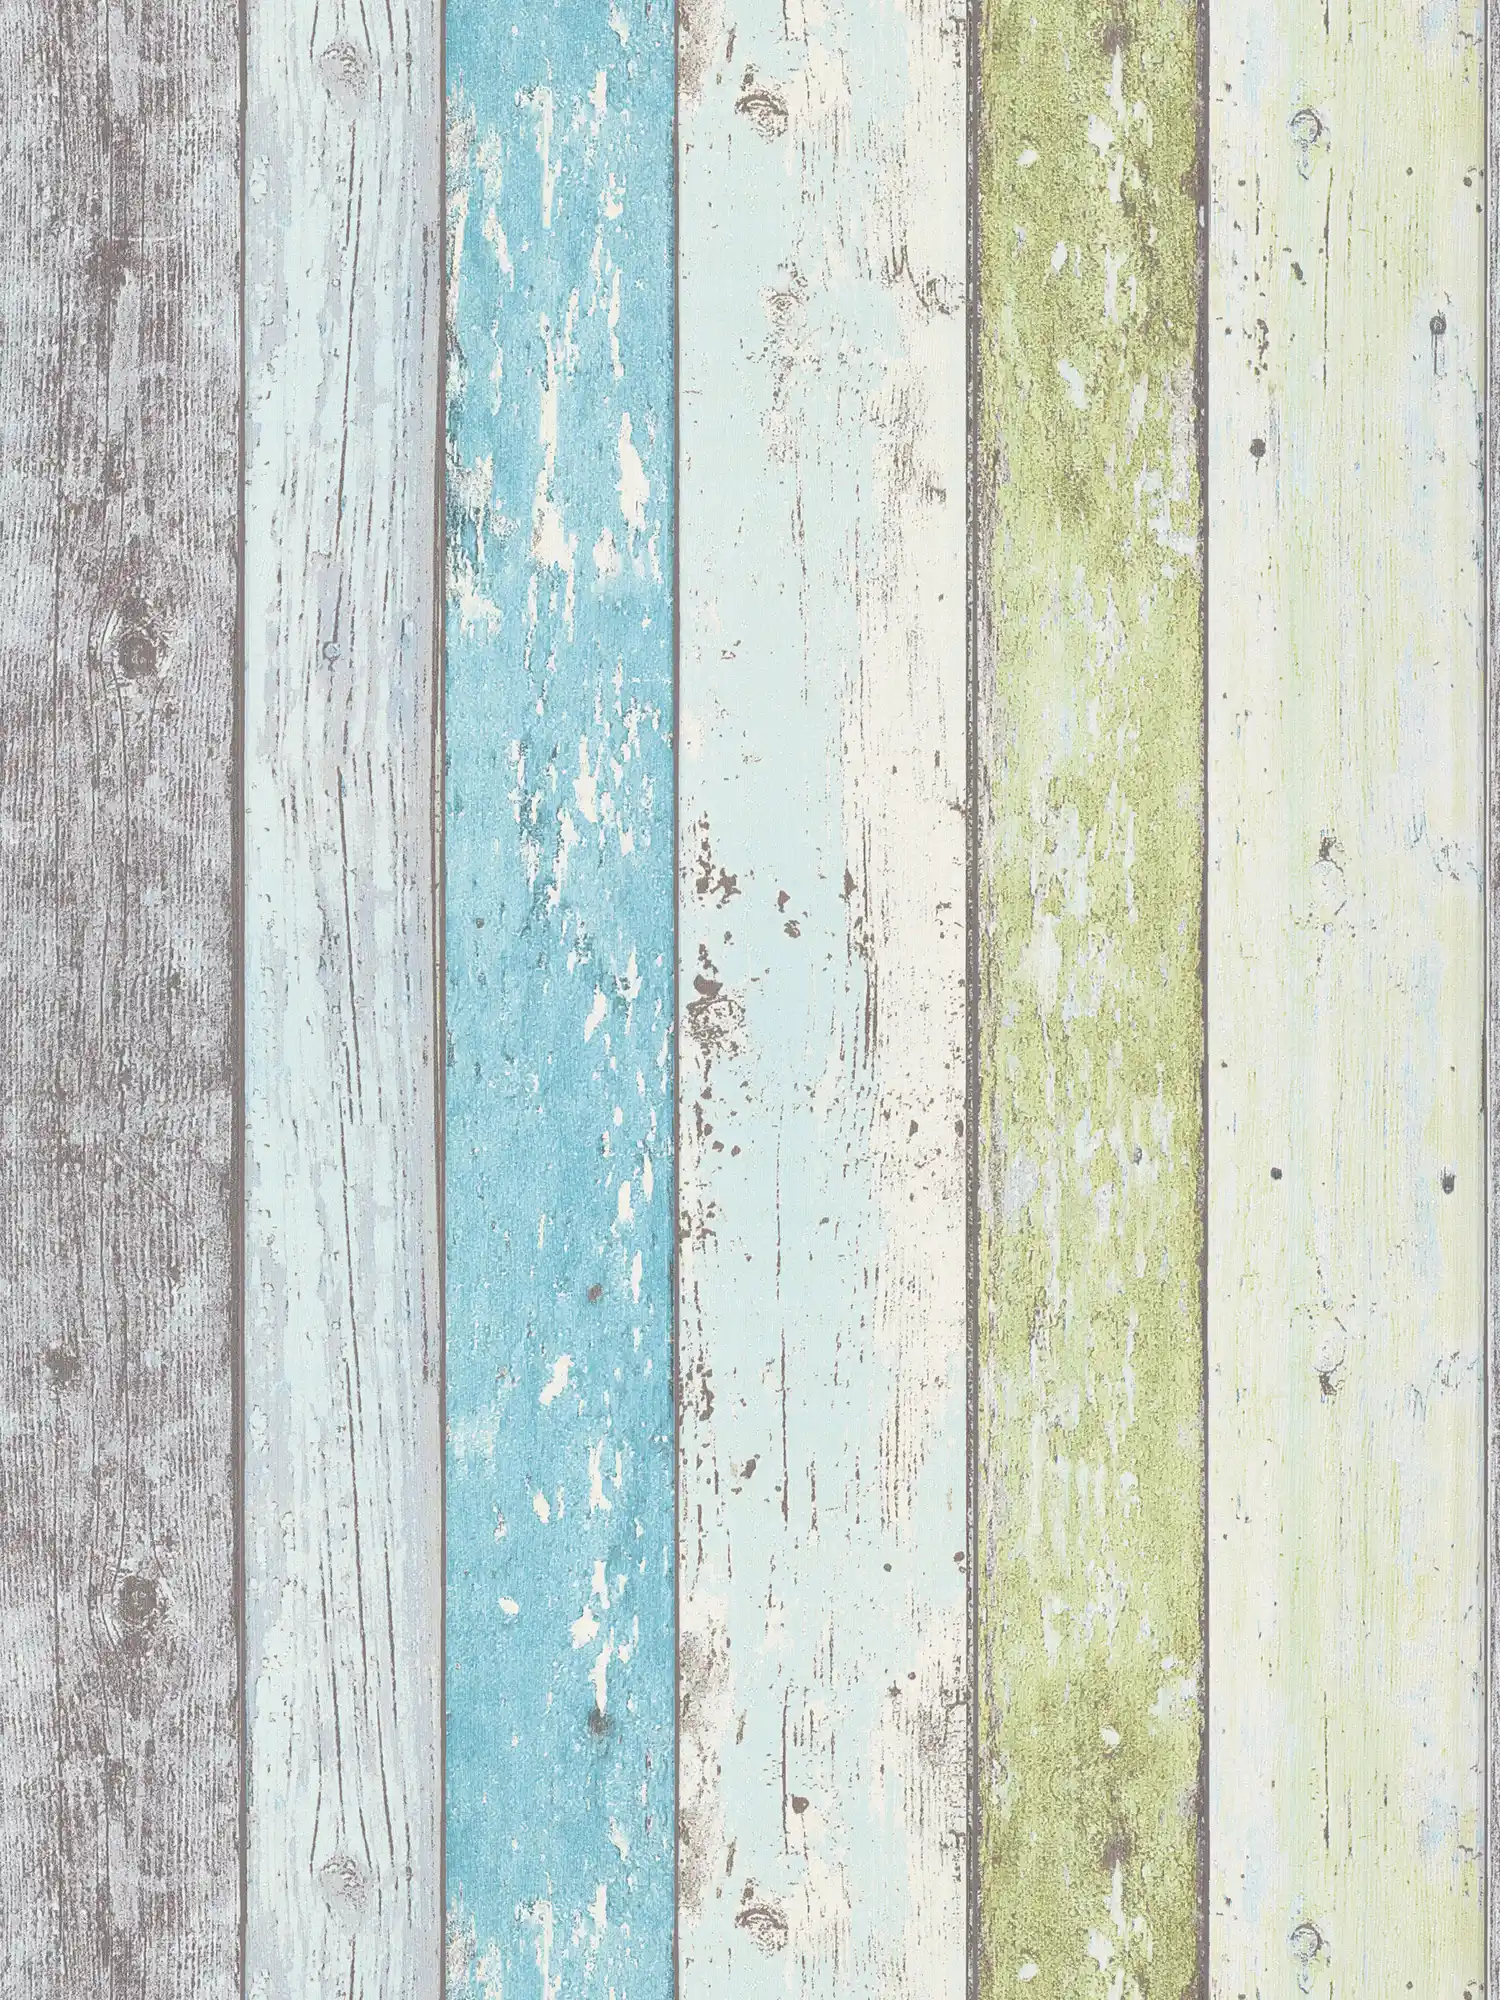 Papier peint bois avec aspect usé pour style vintage & maison de campagne - bleu, vert, blanc
